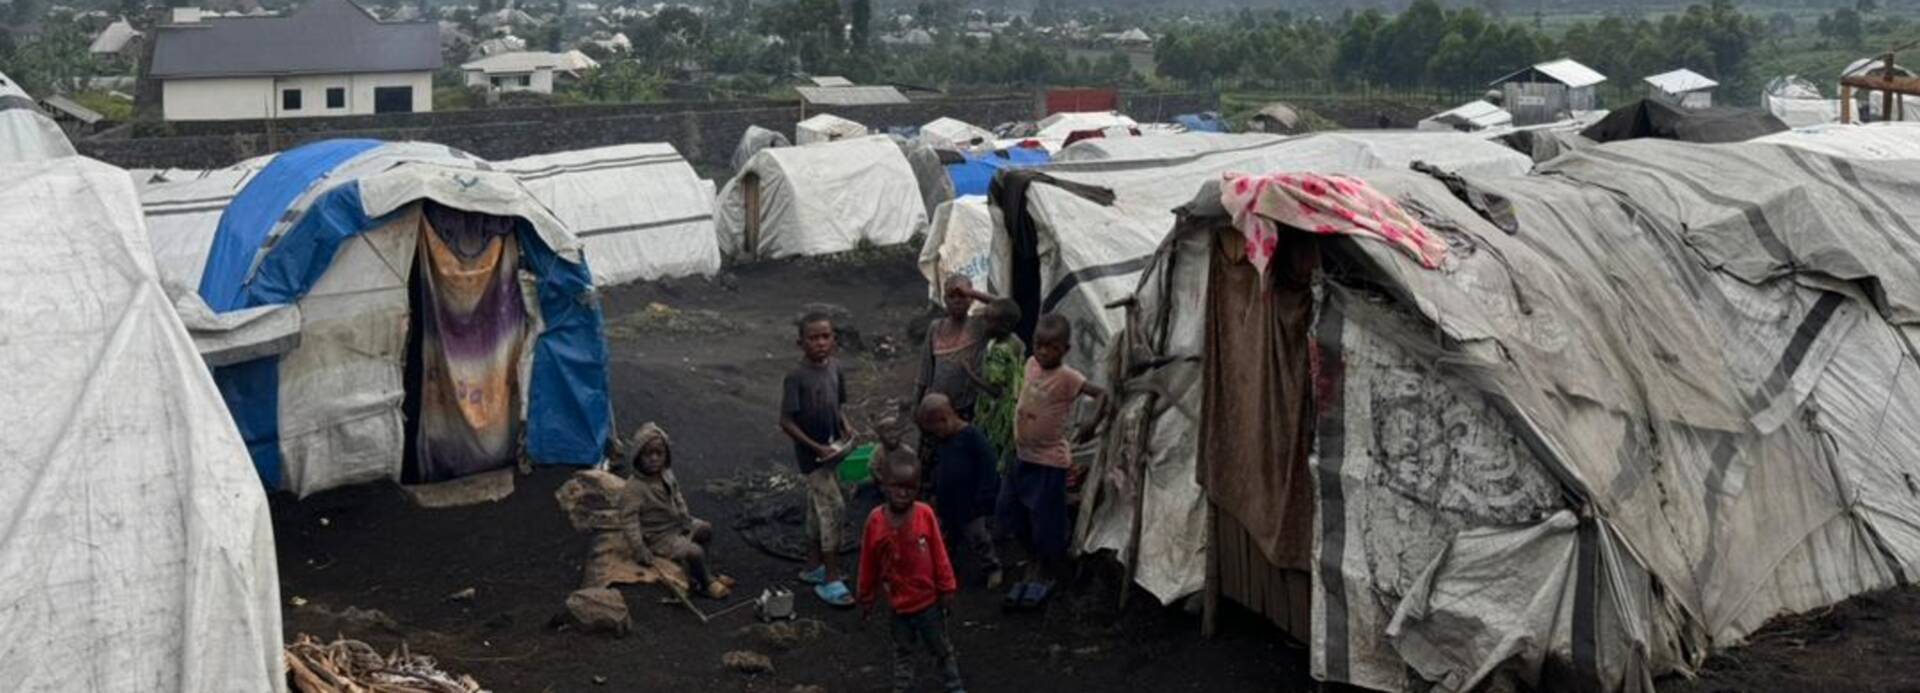 Ein Ausschnitt eines Vertriebenenlagers in der Nähe von Goma in der Demokratischen Republik Kongo. In der Mitte ist eine Familie zwischen Zelten zu sehen. 